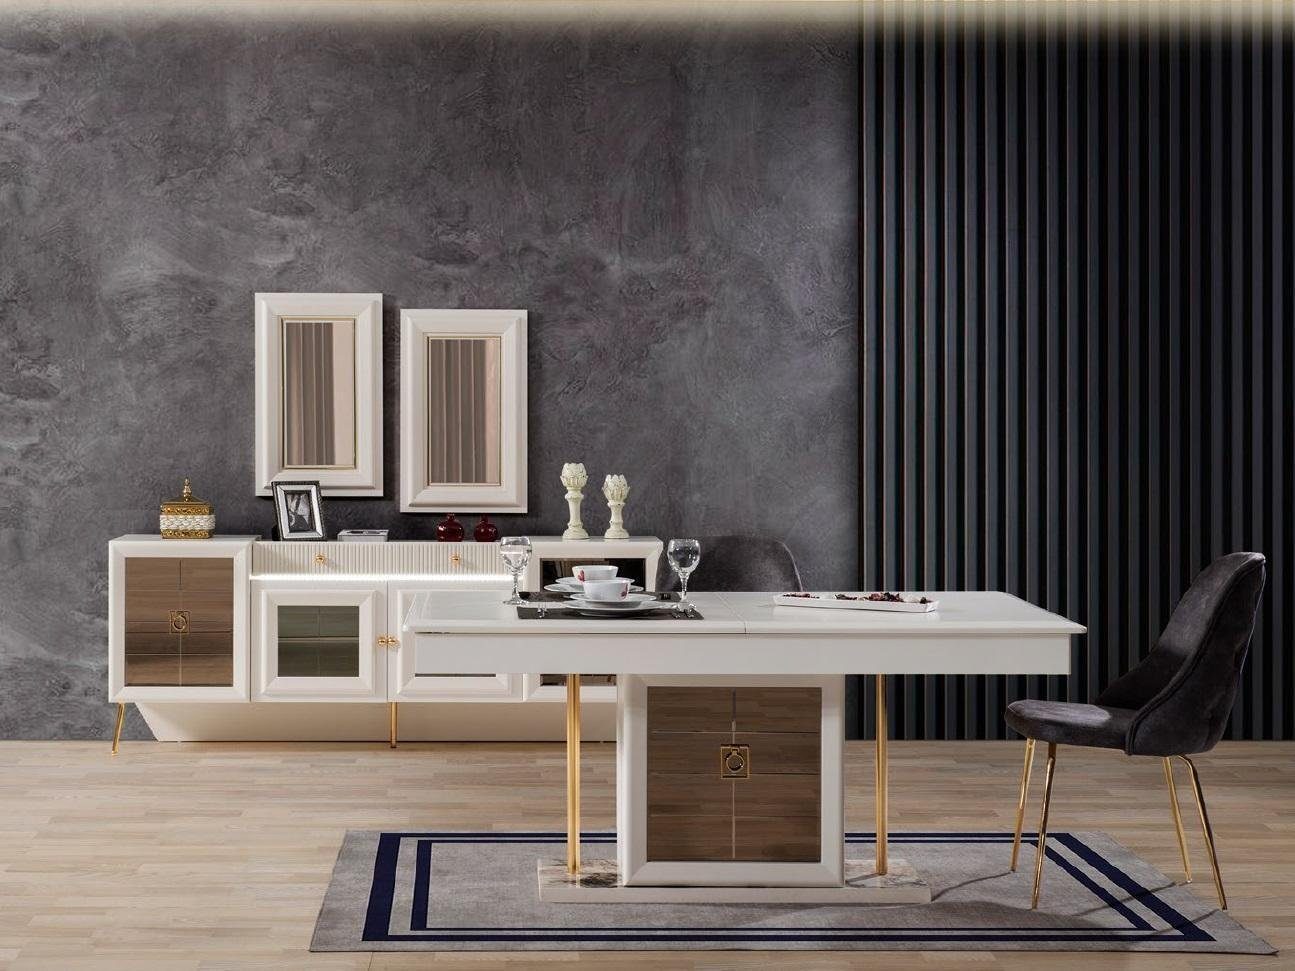 2x Stühle) Zimmer Designer Stühle Esstisch Tisch Möbel / Ess JVmoebel (Esstisch 2x Holz Luxus Moderner Ess